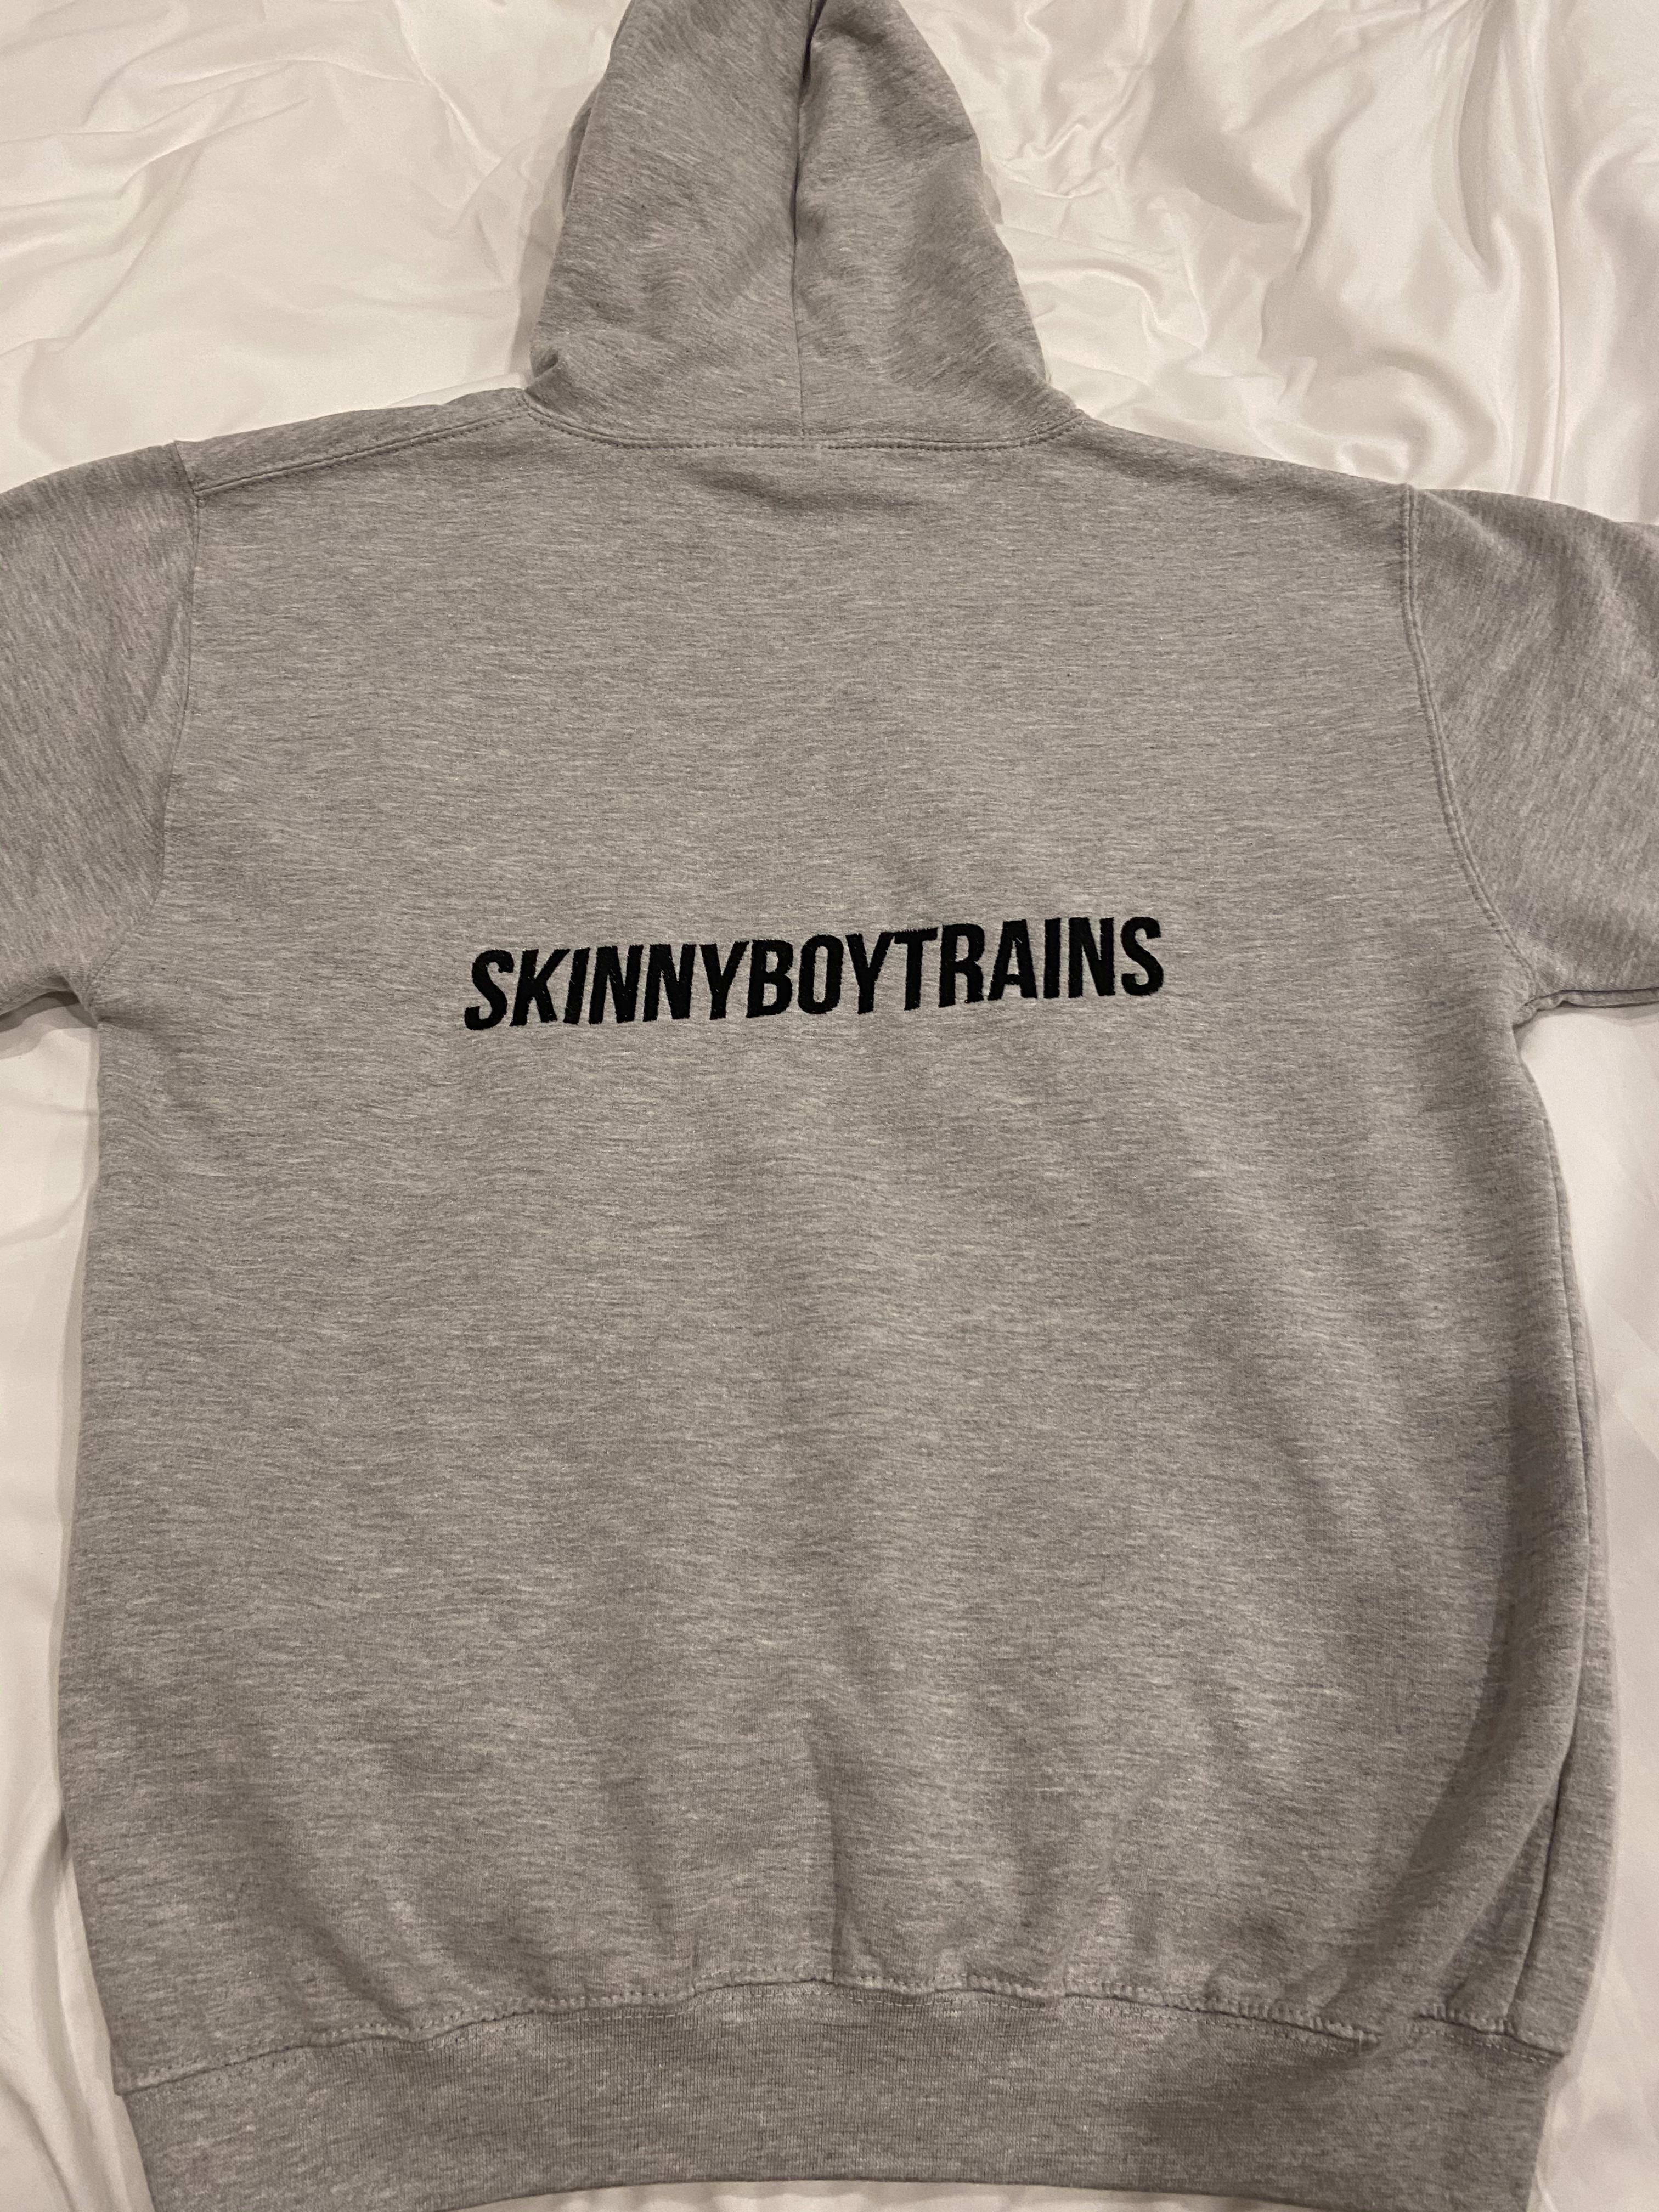 Skinny Boy Trains